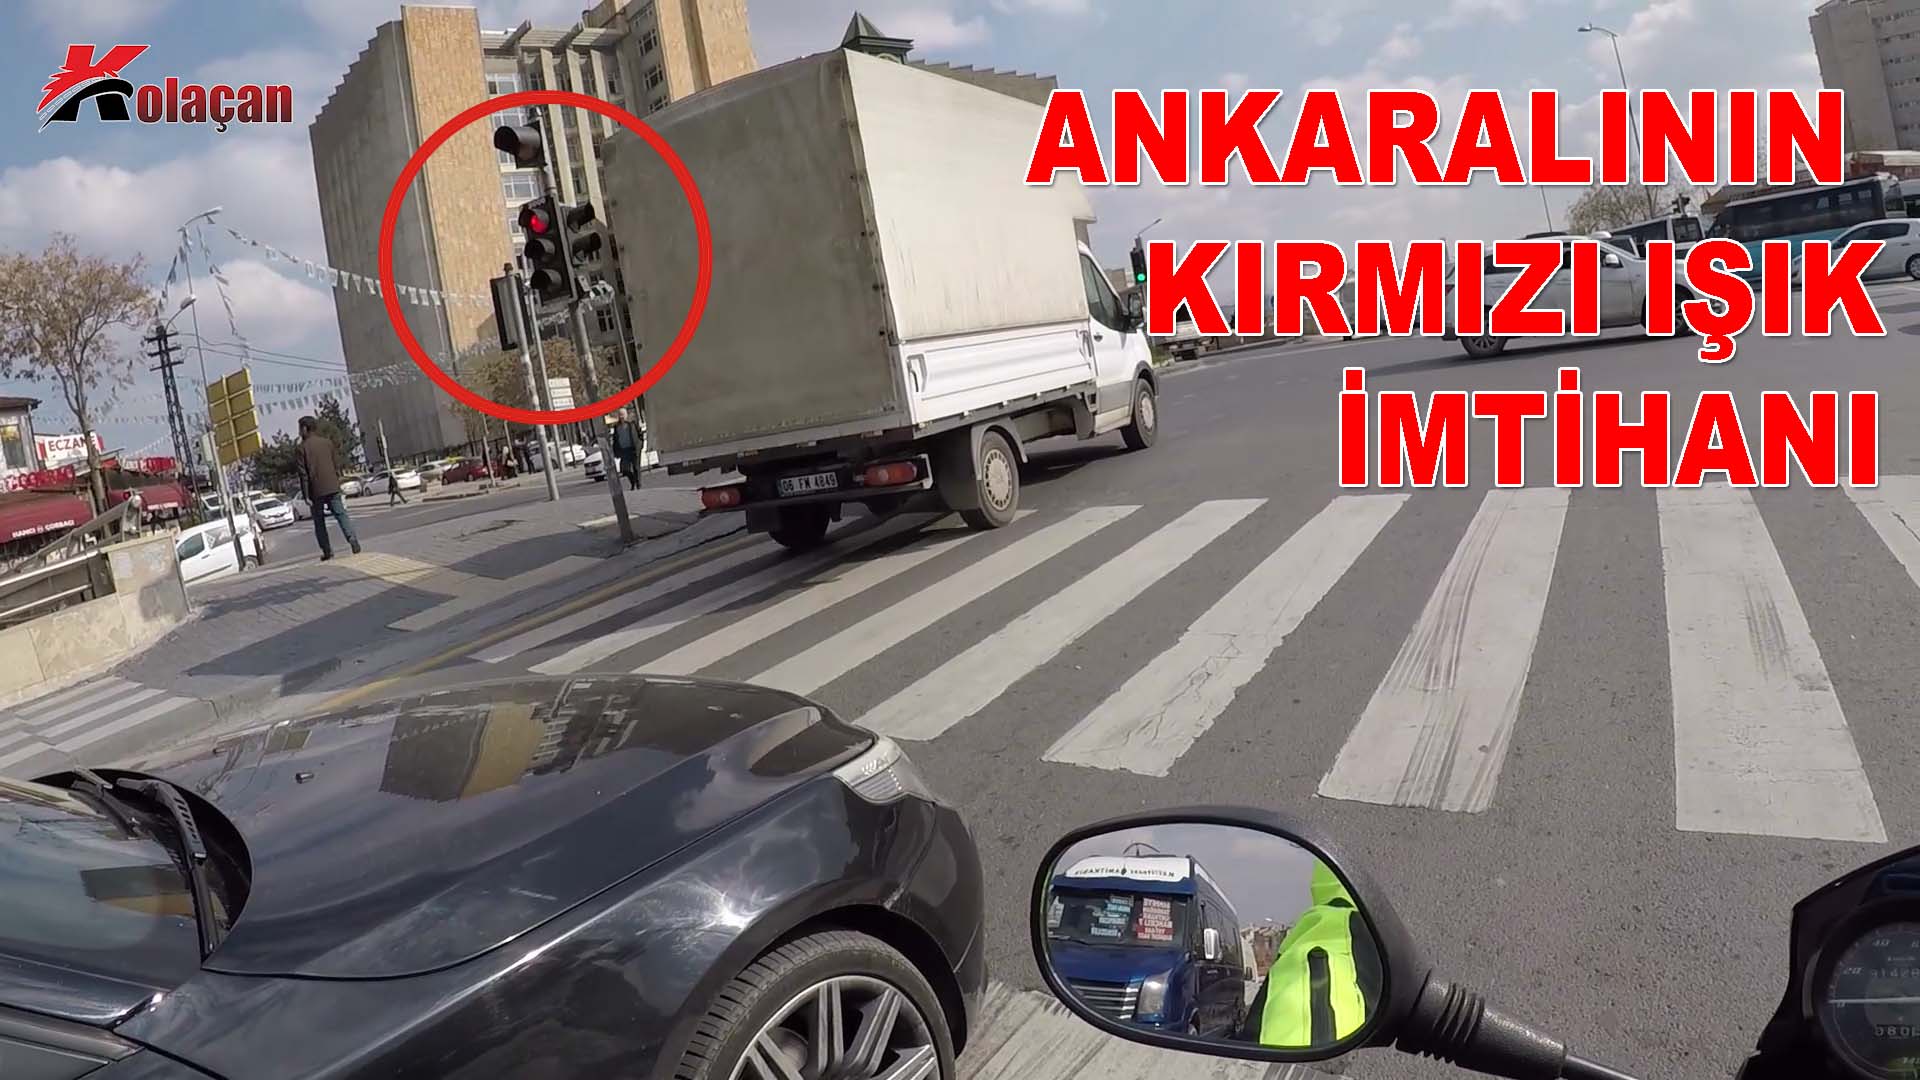 Ankara'da Kırmızıda Durmak Yasak | Gençlik Nereye Gidiyor | Trafik Günlüğü 25